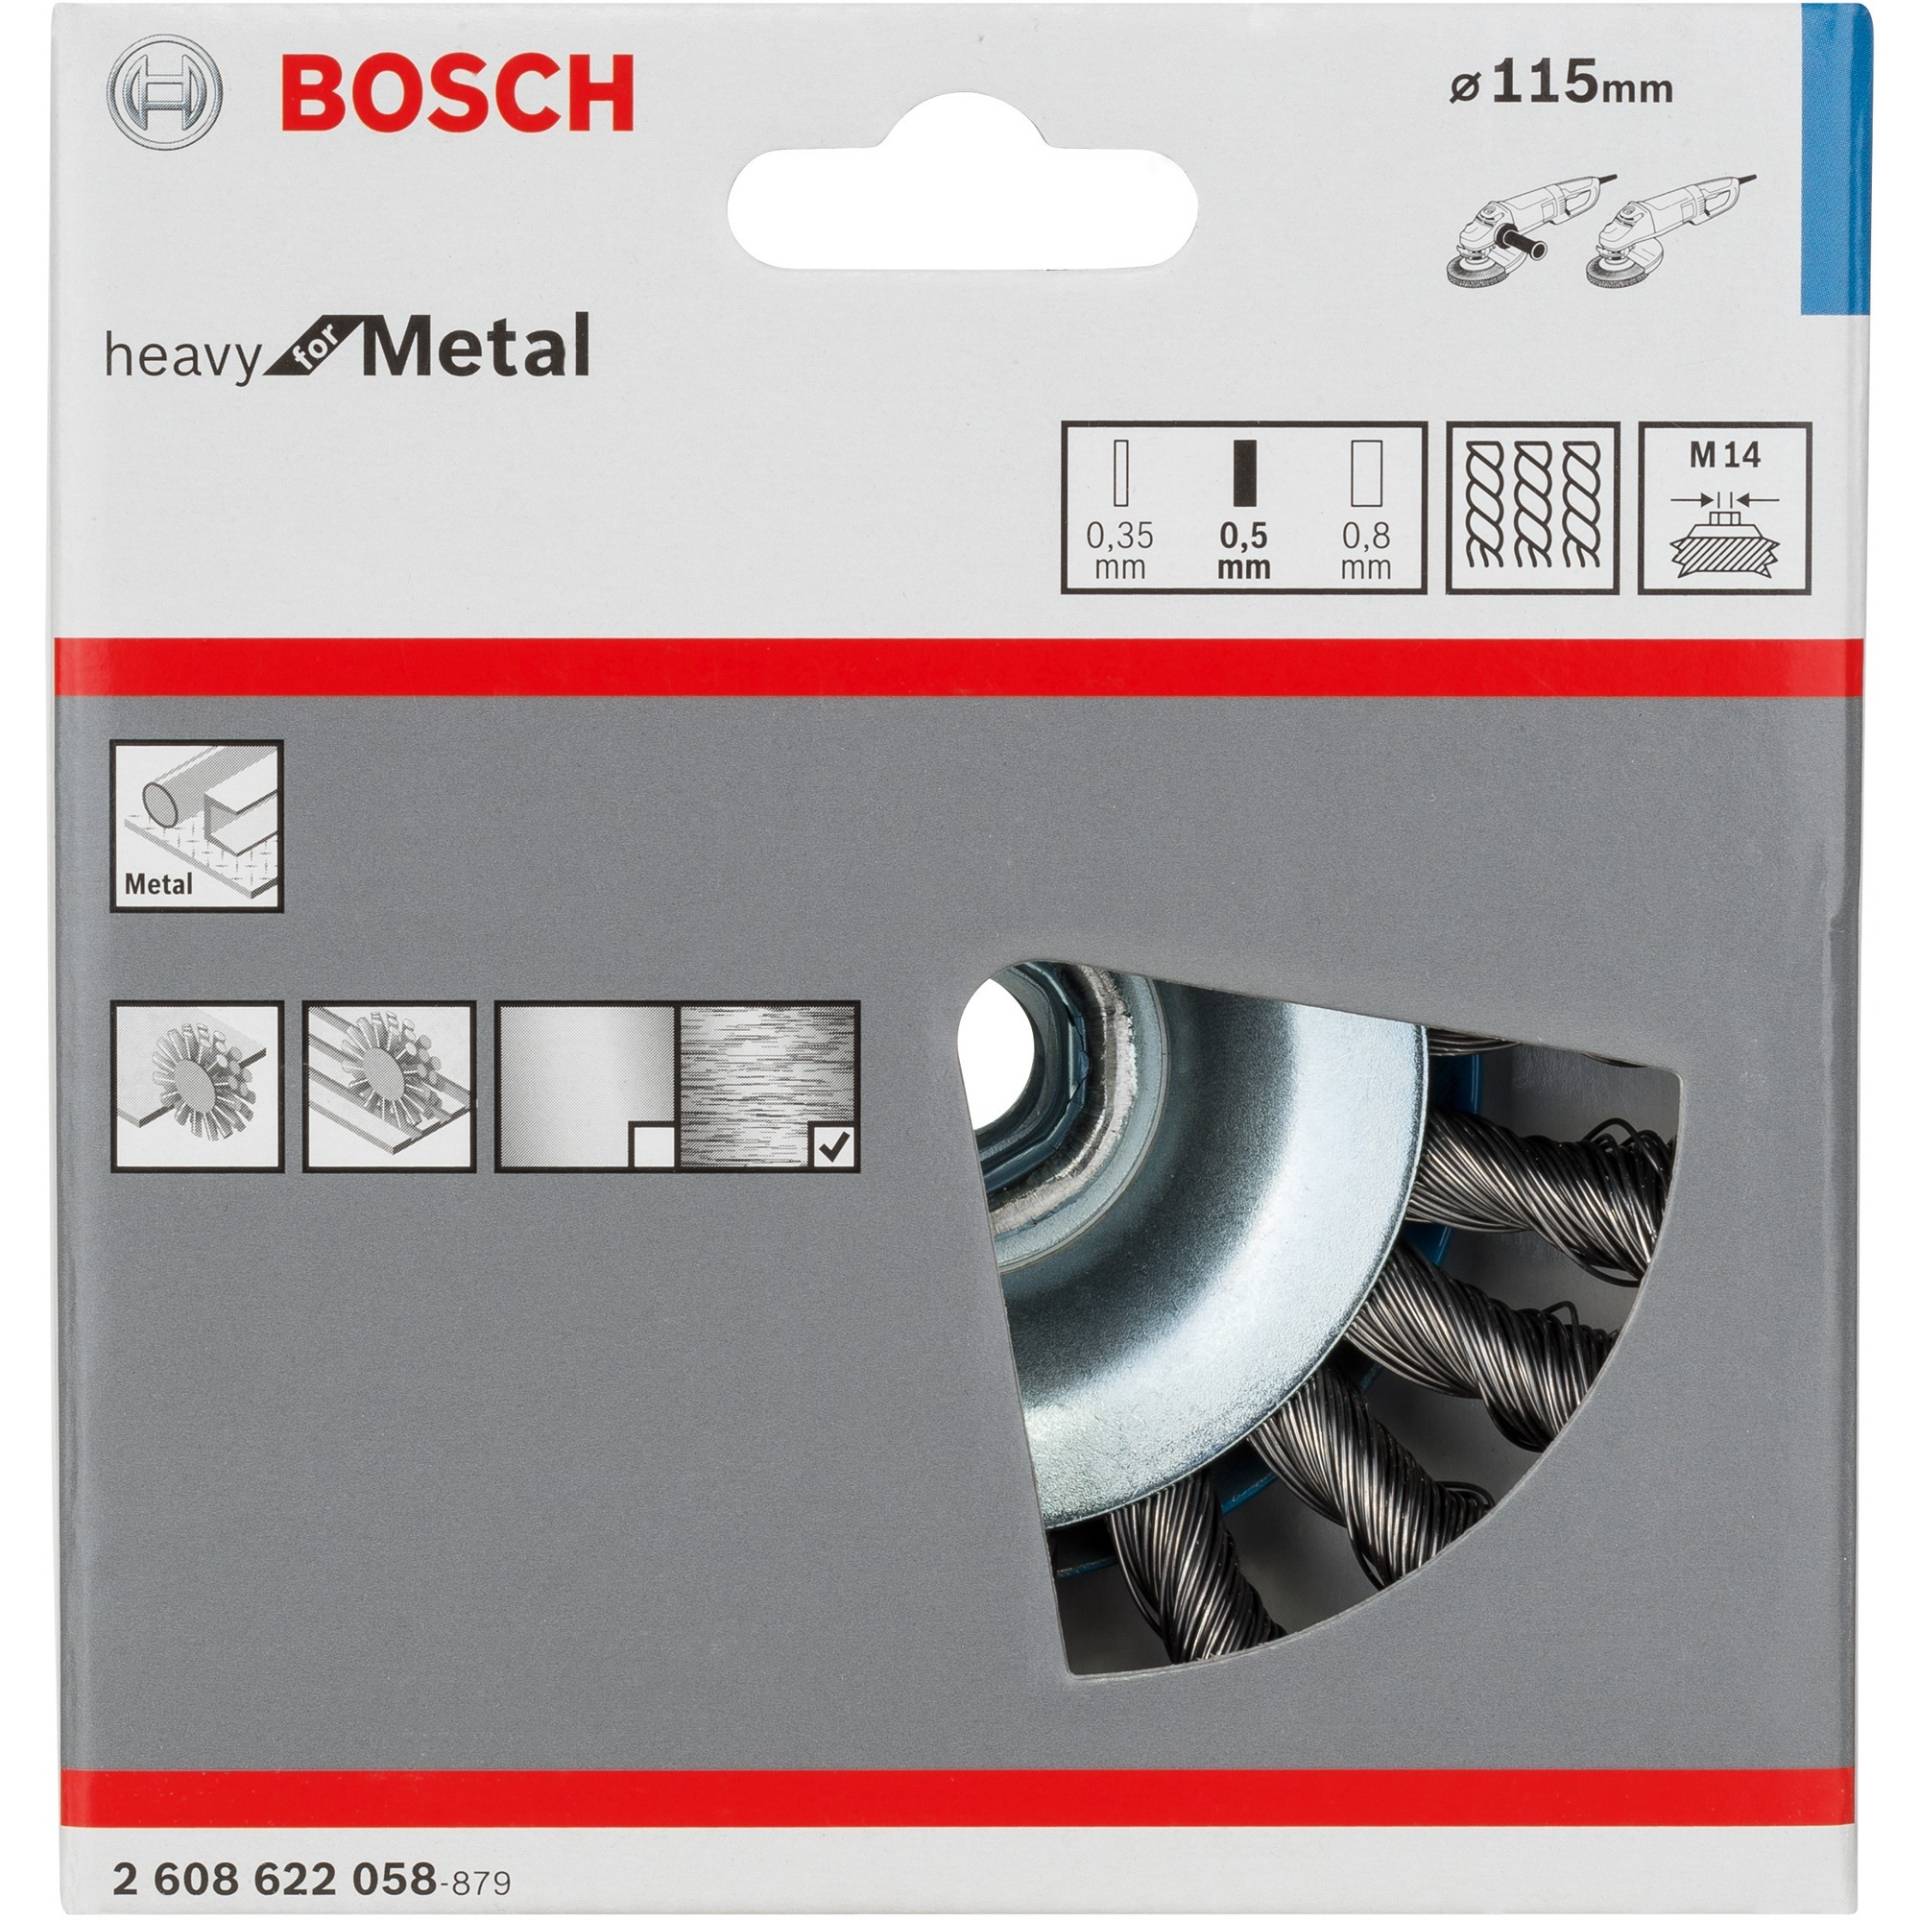 Kegelbürste Heavy for Metal, Ø 115mm, gezopft von Bosch